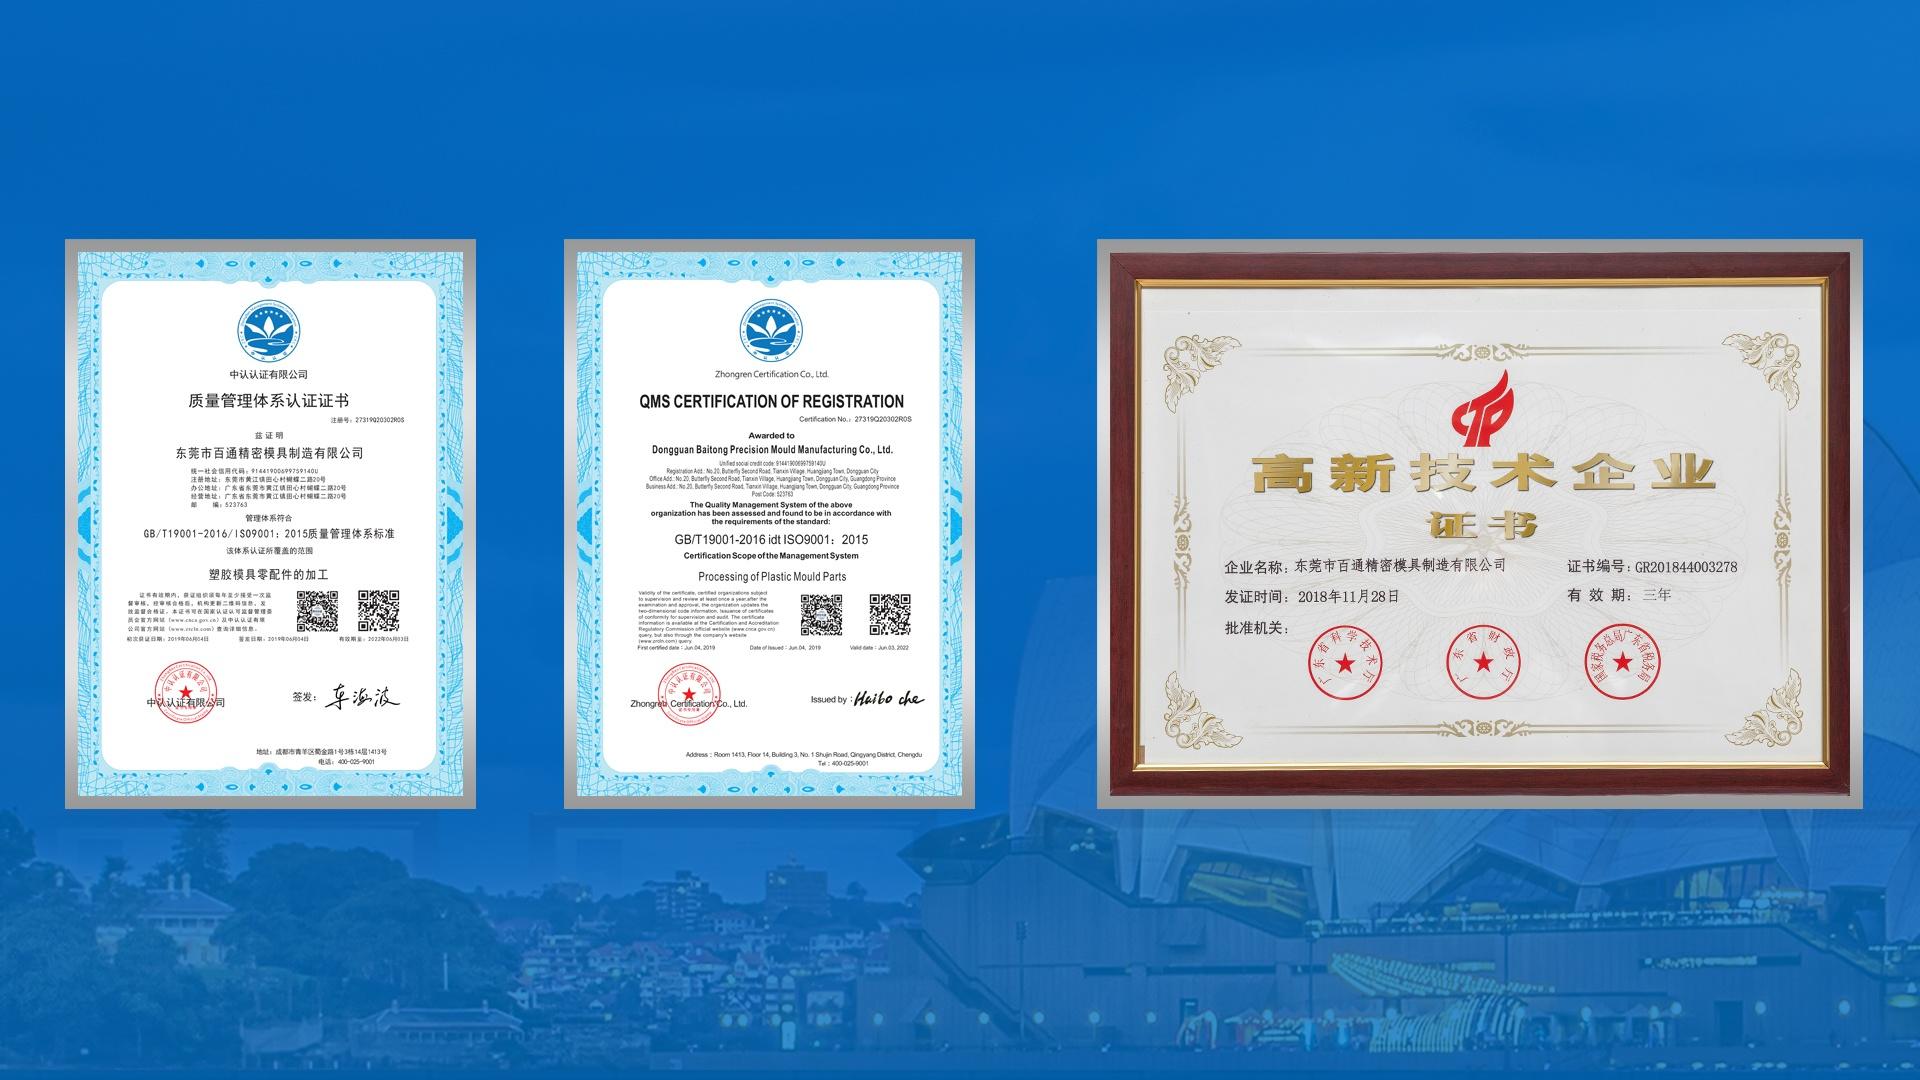 Baito certificate